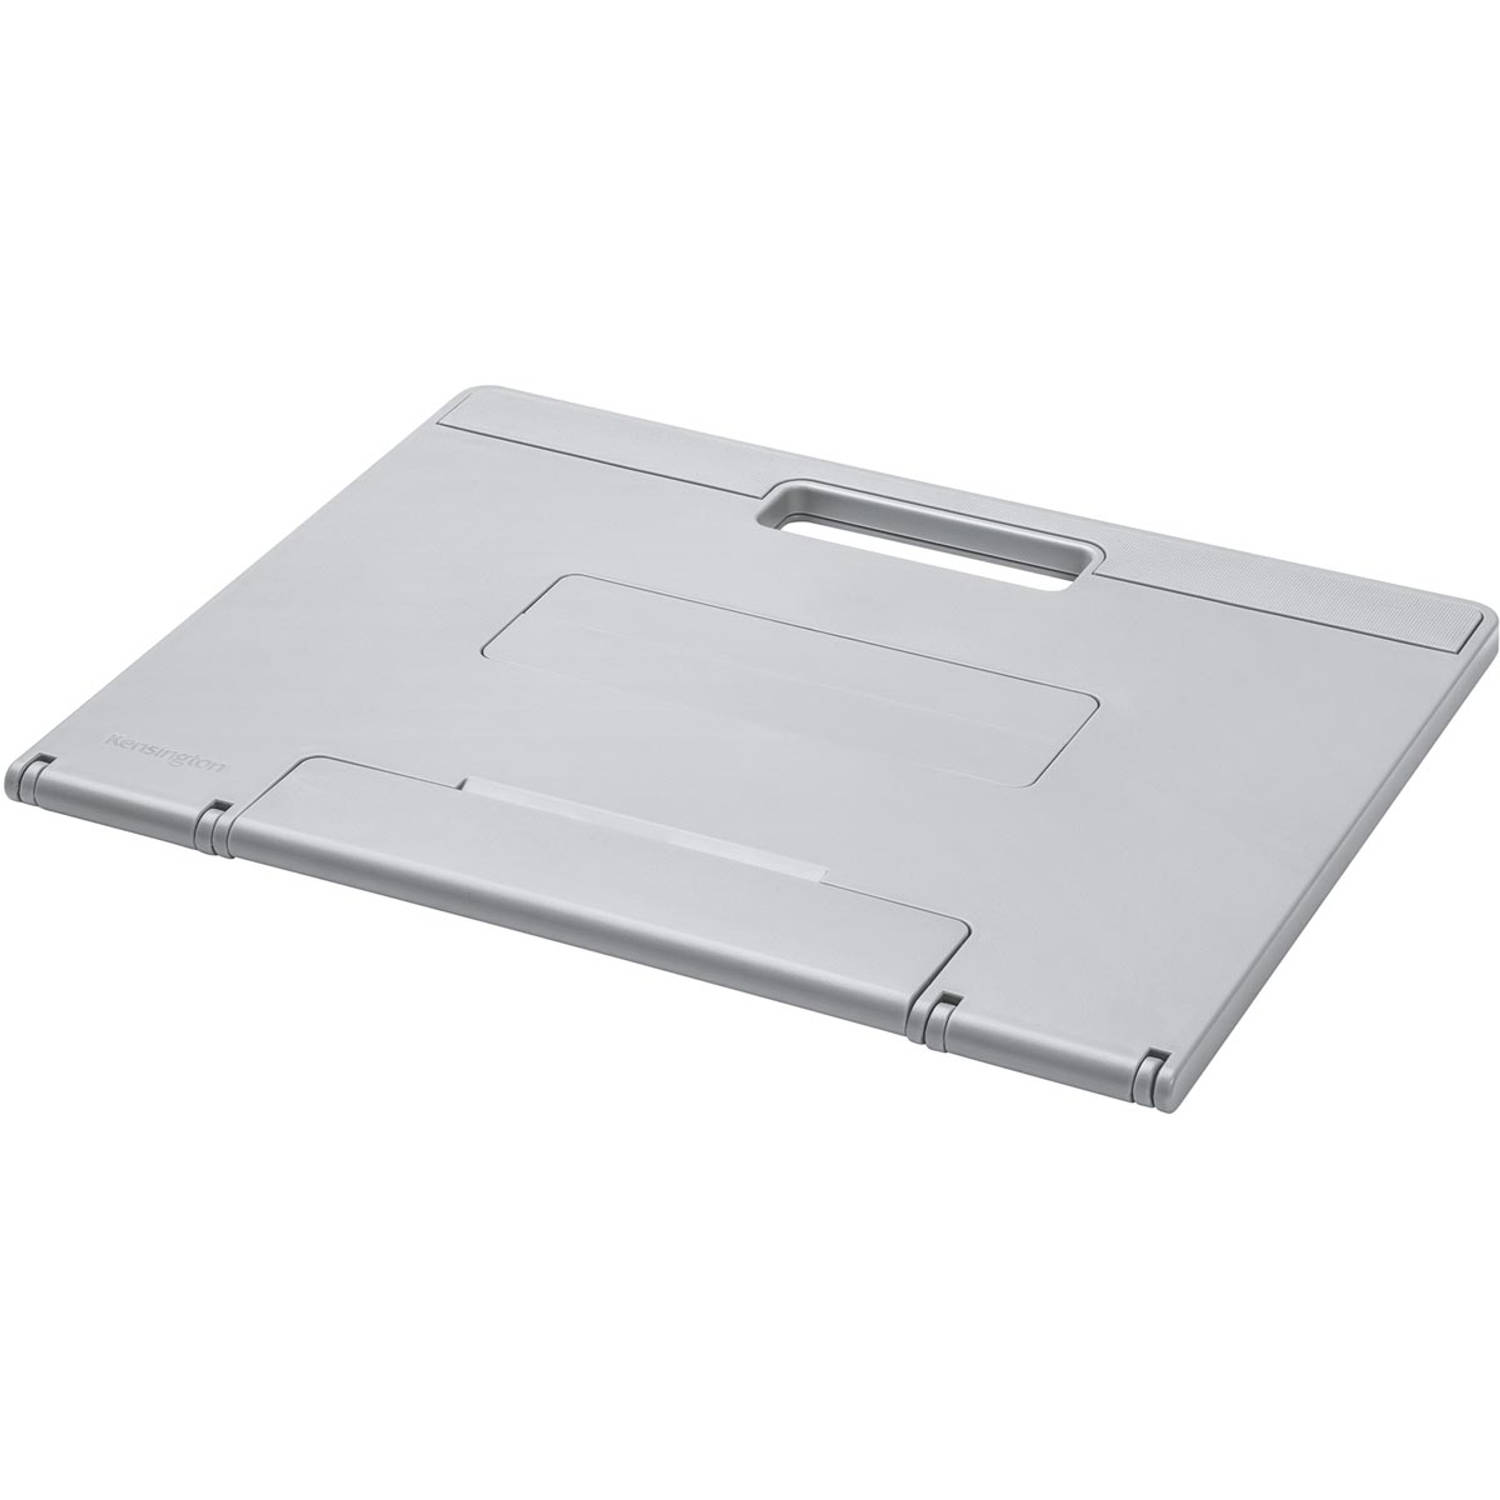 Kensington SmartFit Easy Riser Go laptopstandaard, voor laptops van 17 inch, grijs 10 stuks